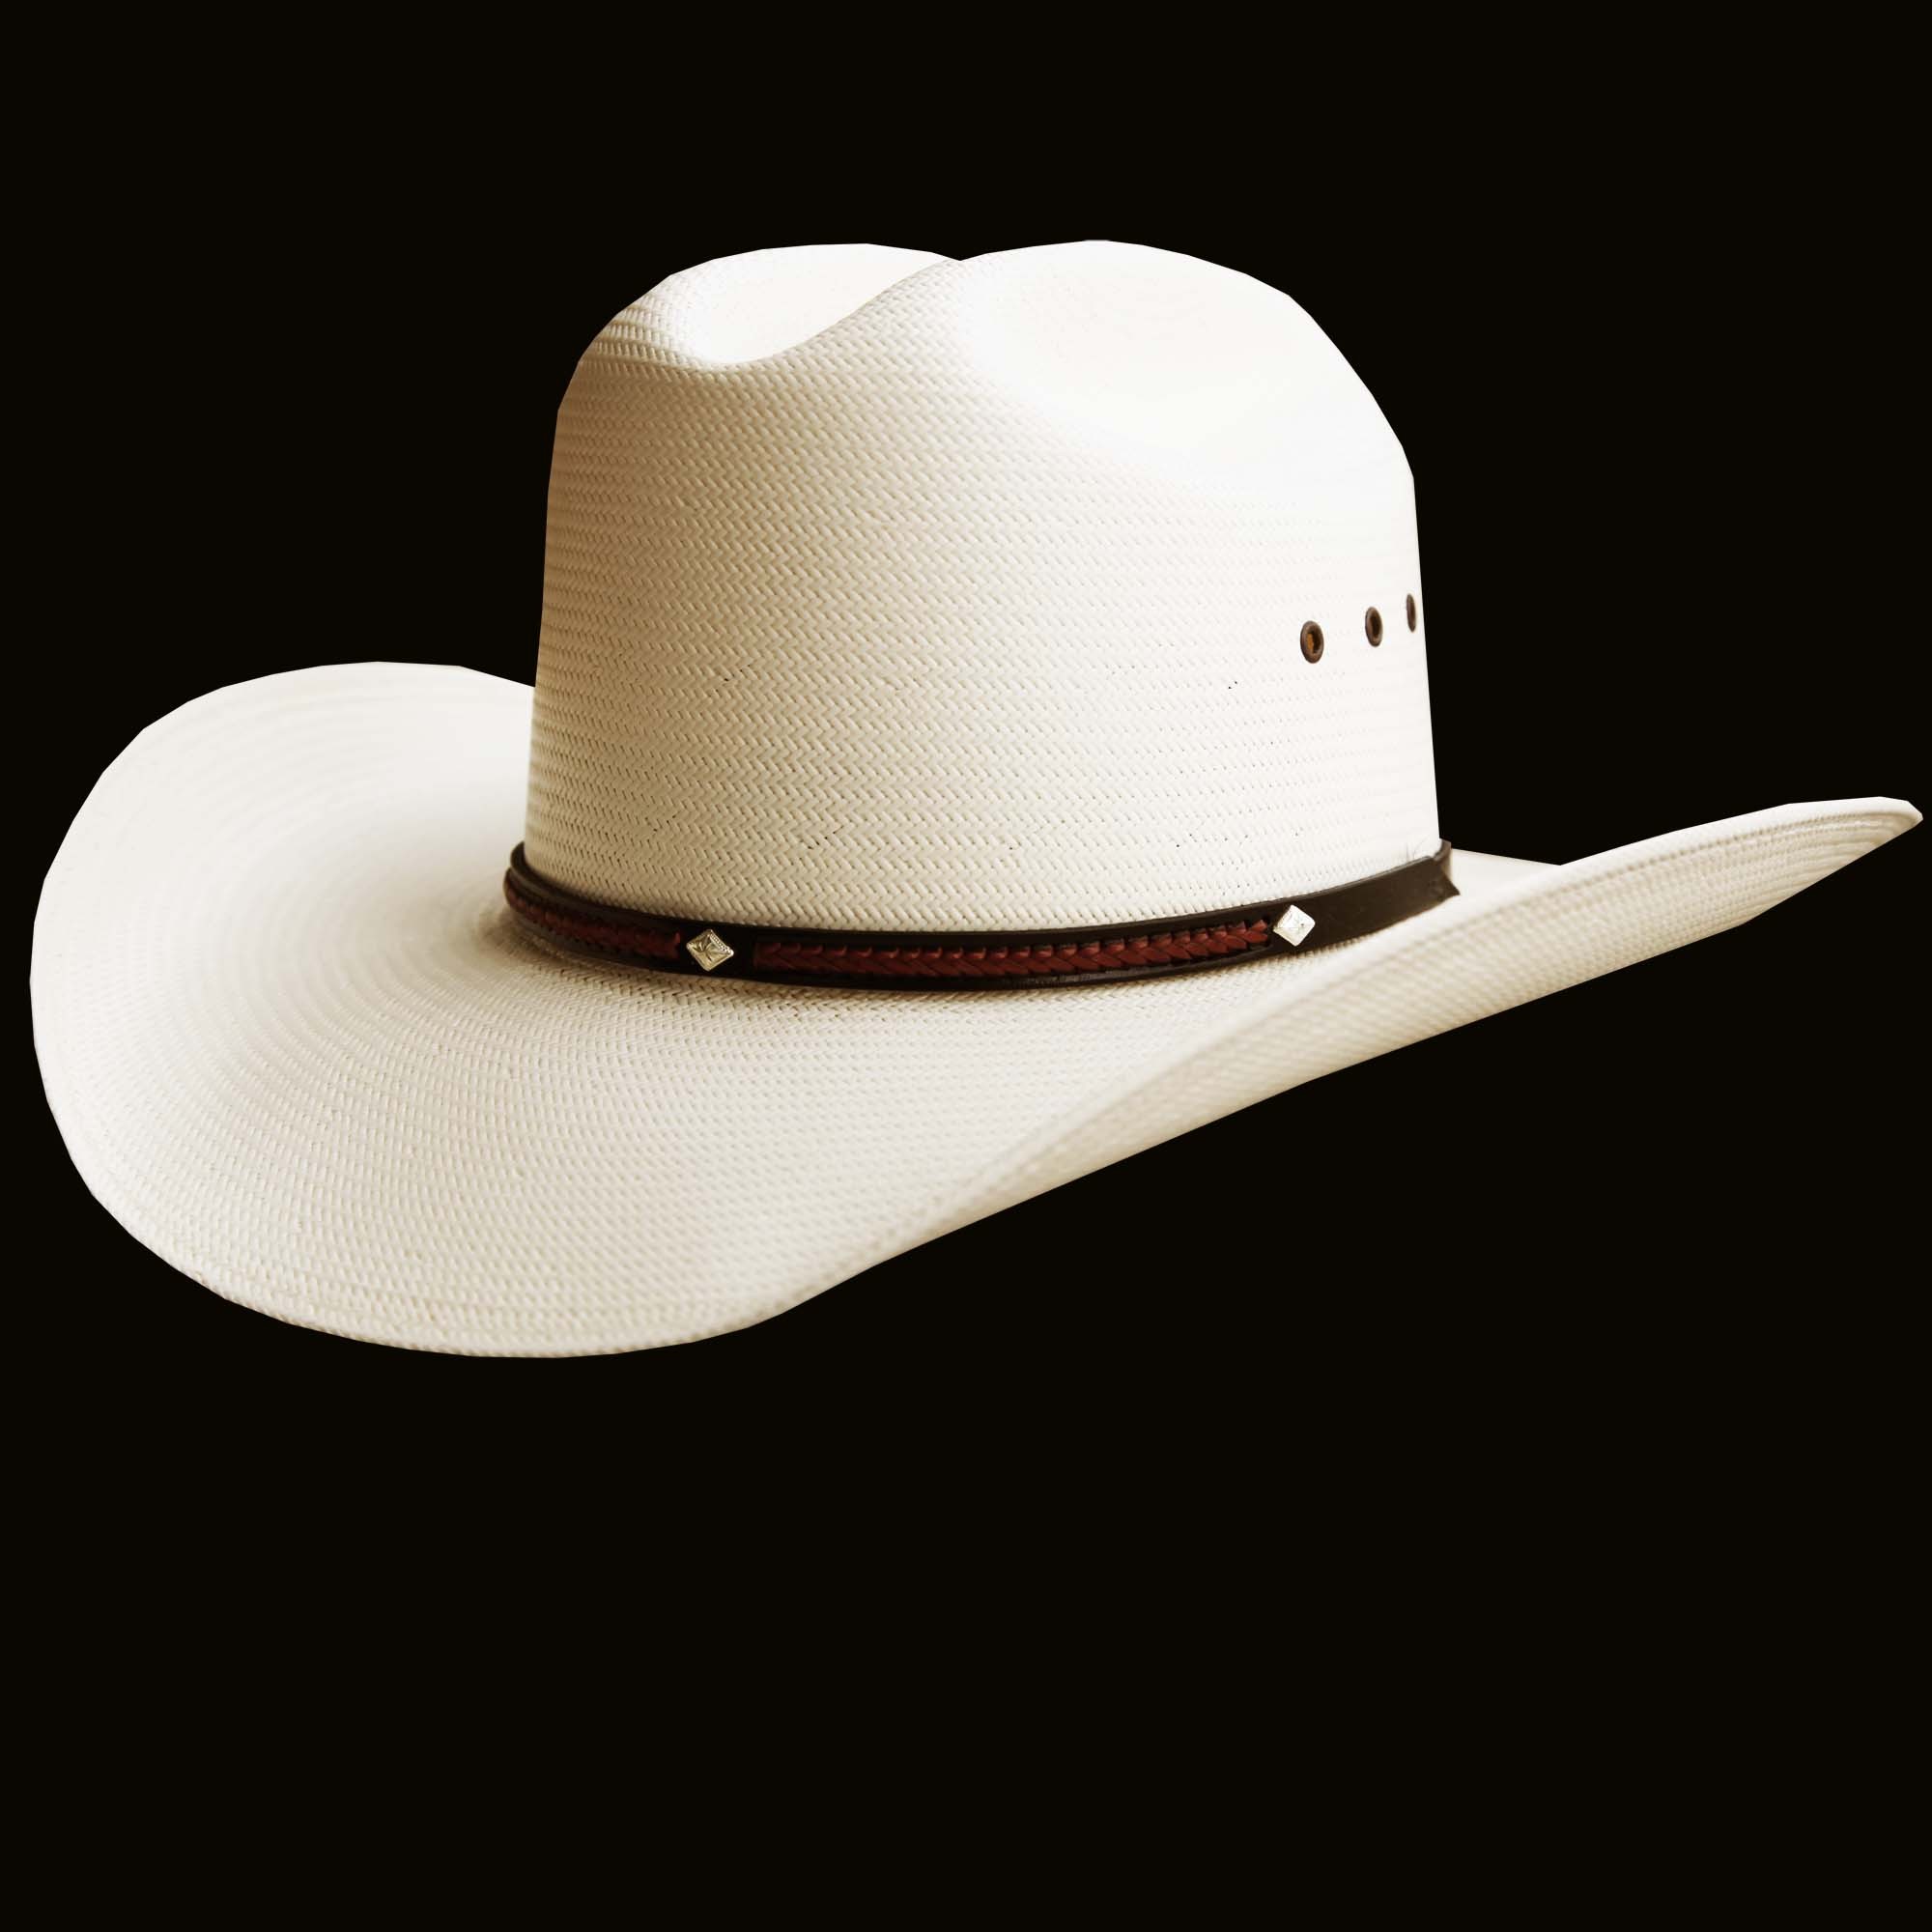 ステットソン カウボーイハット/ Stetson Western Straw Hat